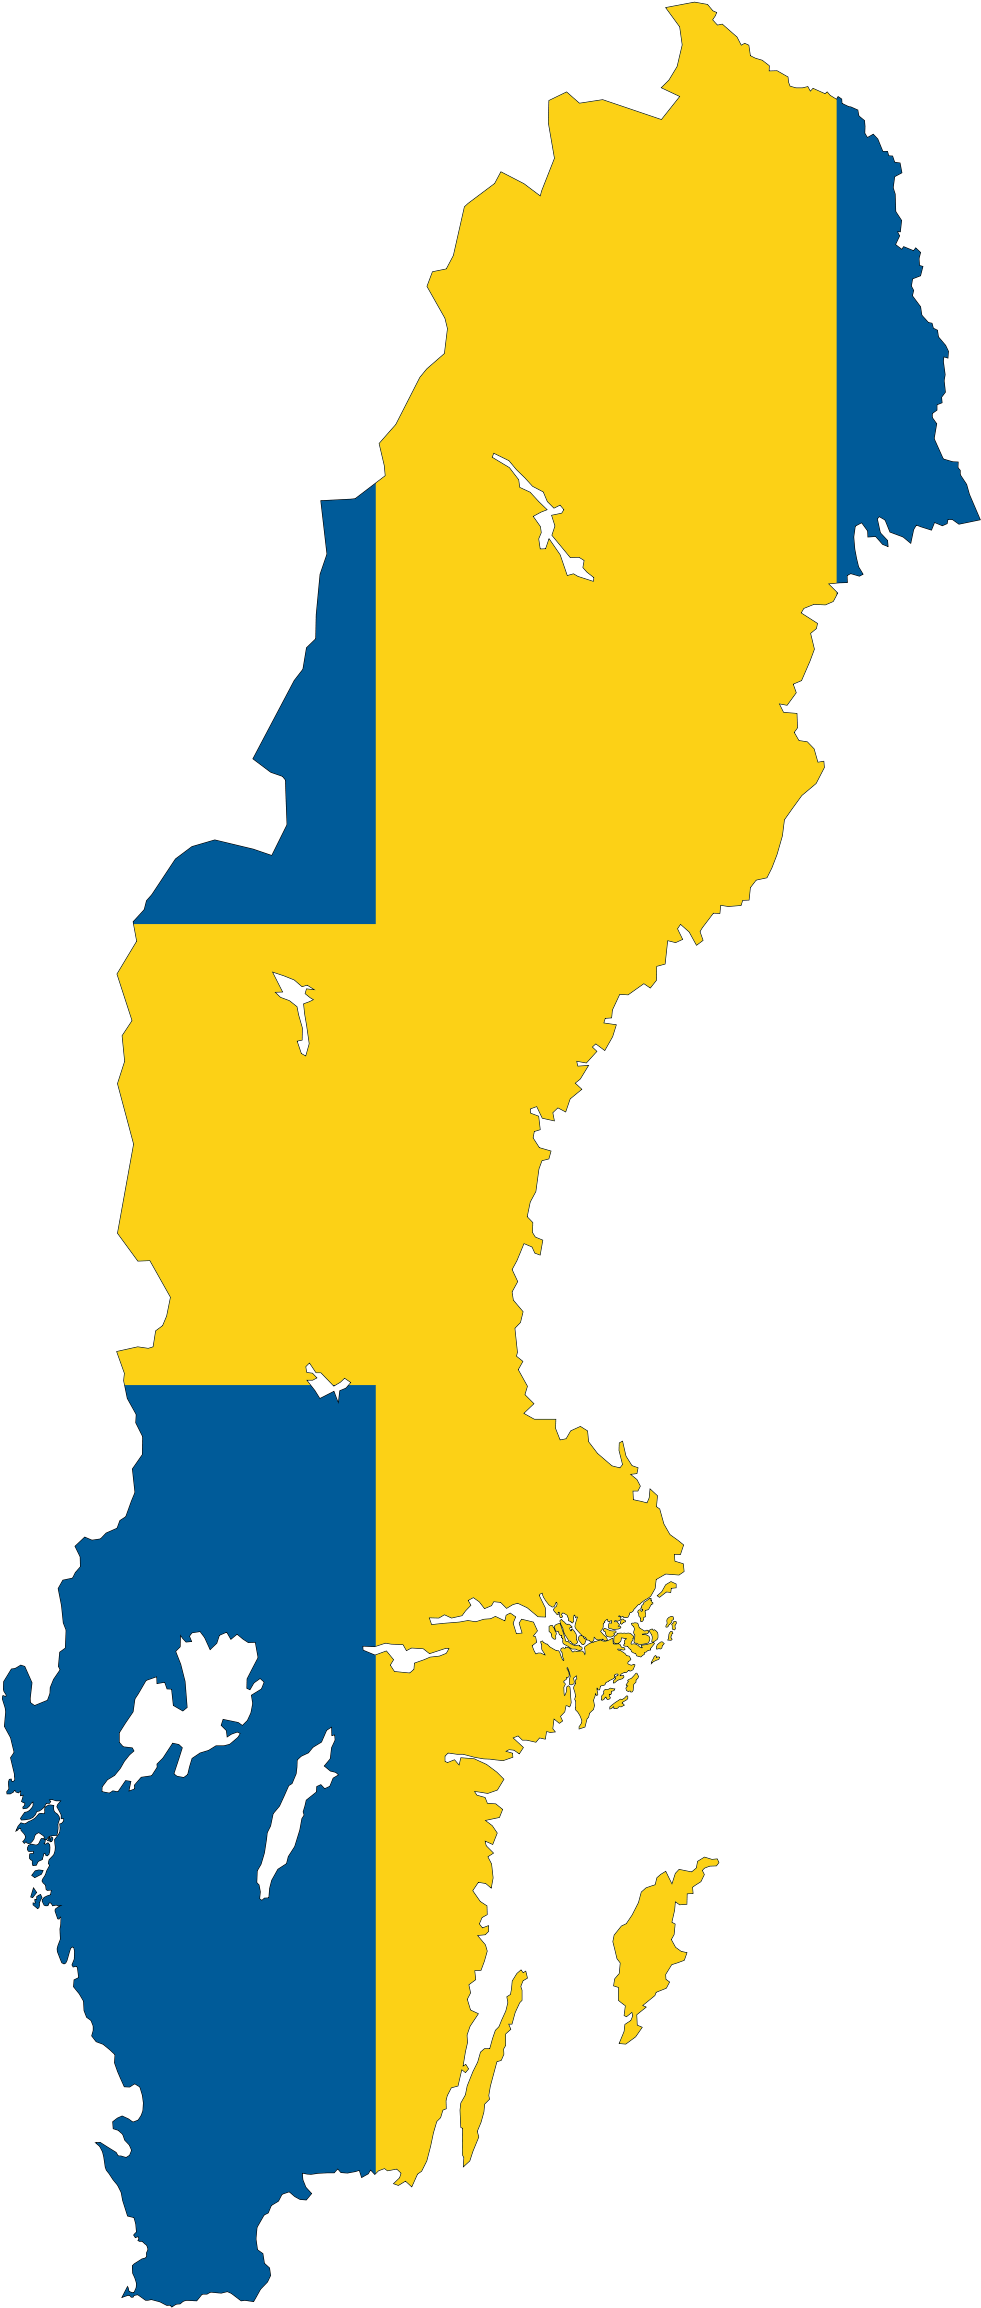 Sweden Flag Download PNG Image